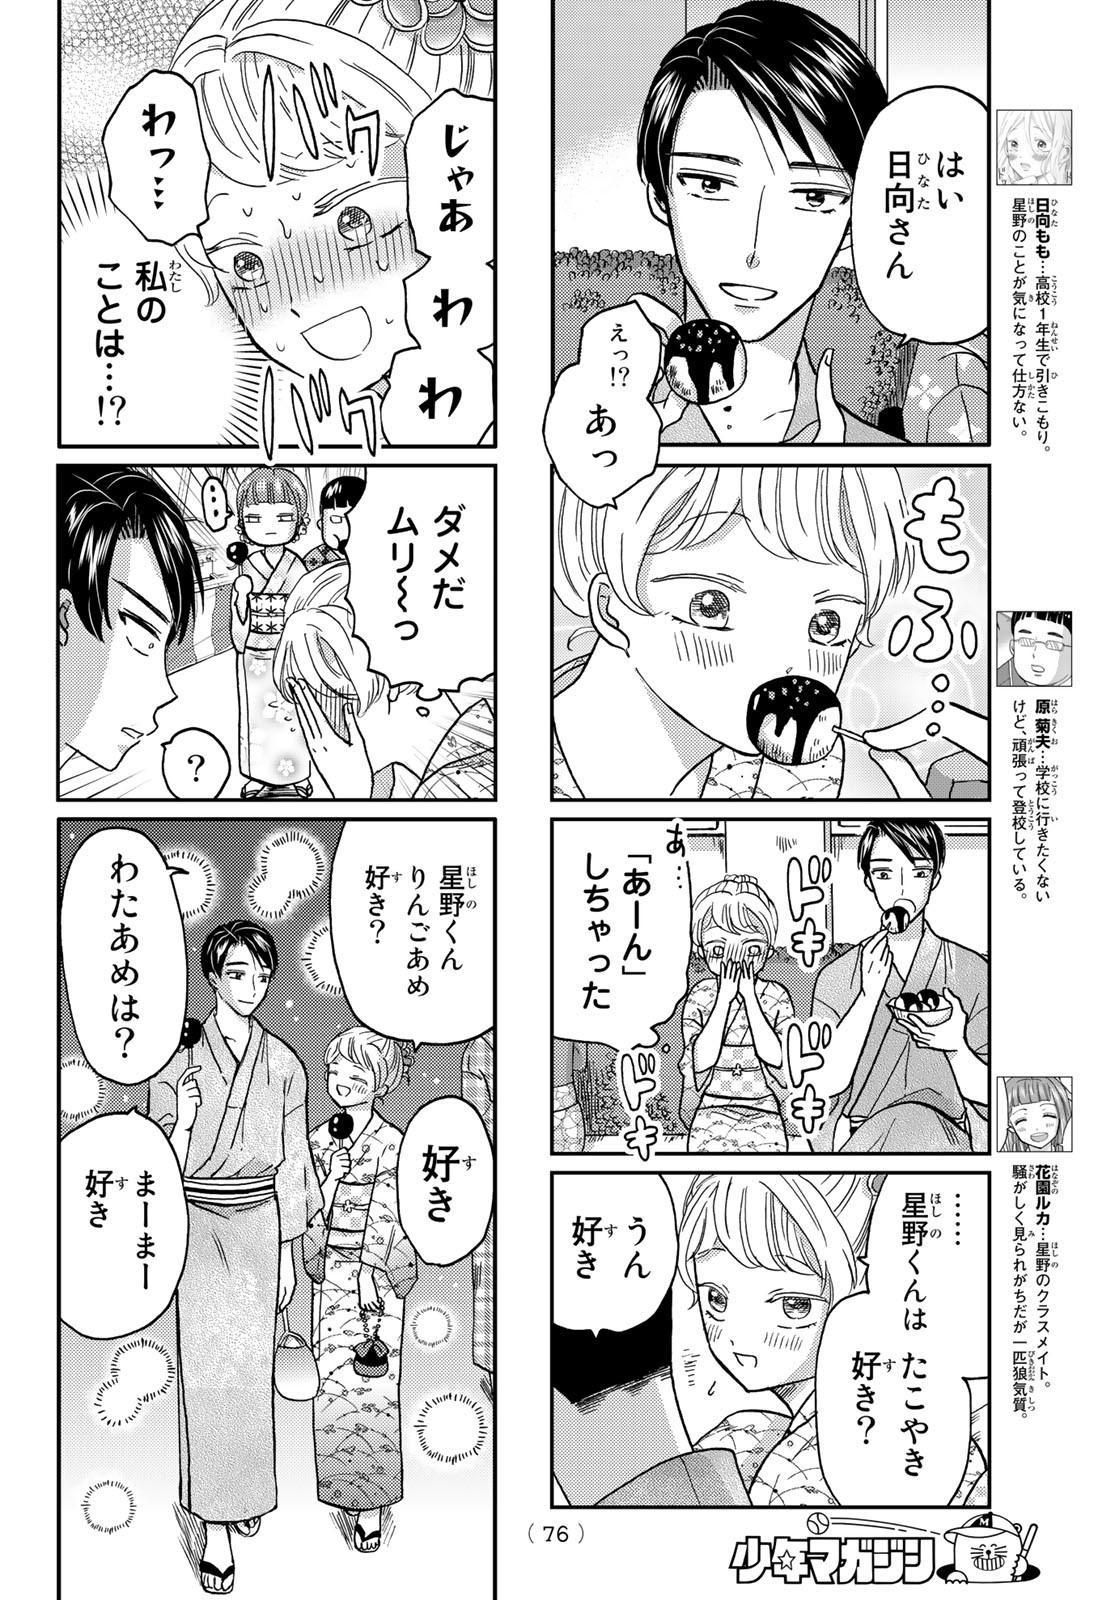 Hinata-san, Hoshino desu. - Chapter 046 - Page 4